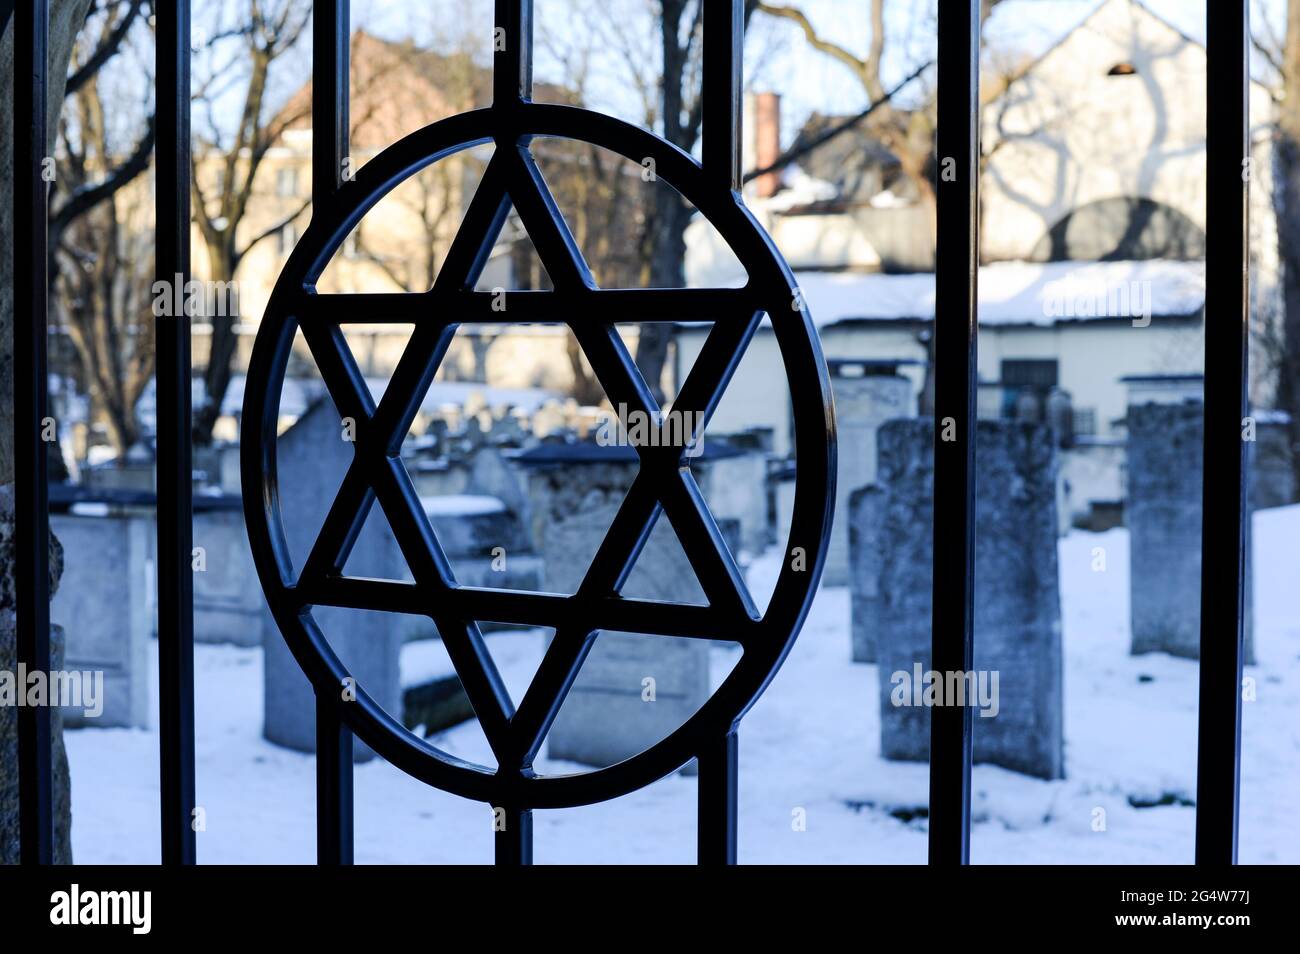 POLEN Krakow Krakov, jewtown, jewish cemetery Stock Photo